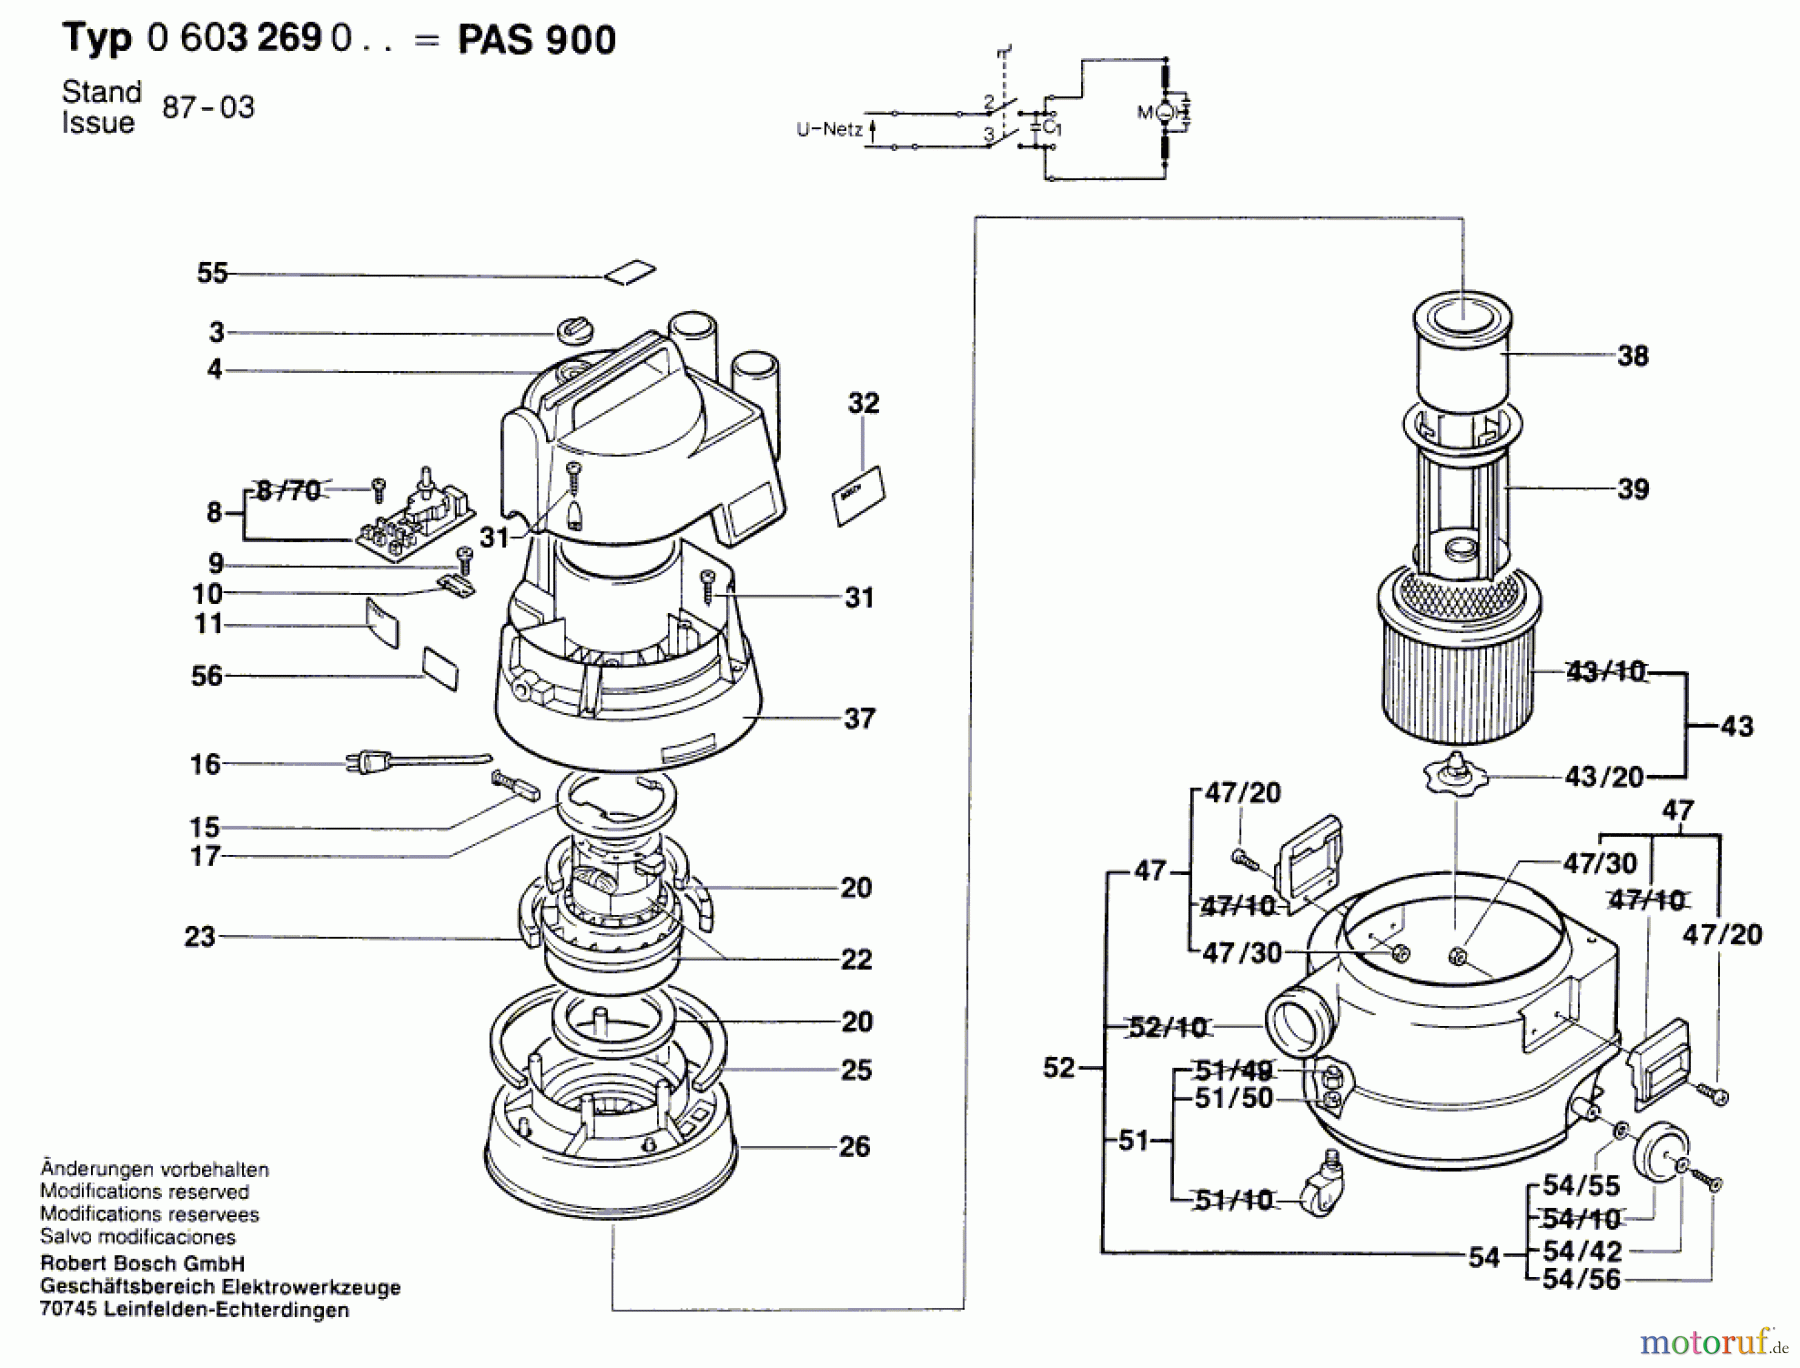  Bosch Werkzeug Allzwecksauger PAS 900 Seite 1